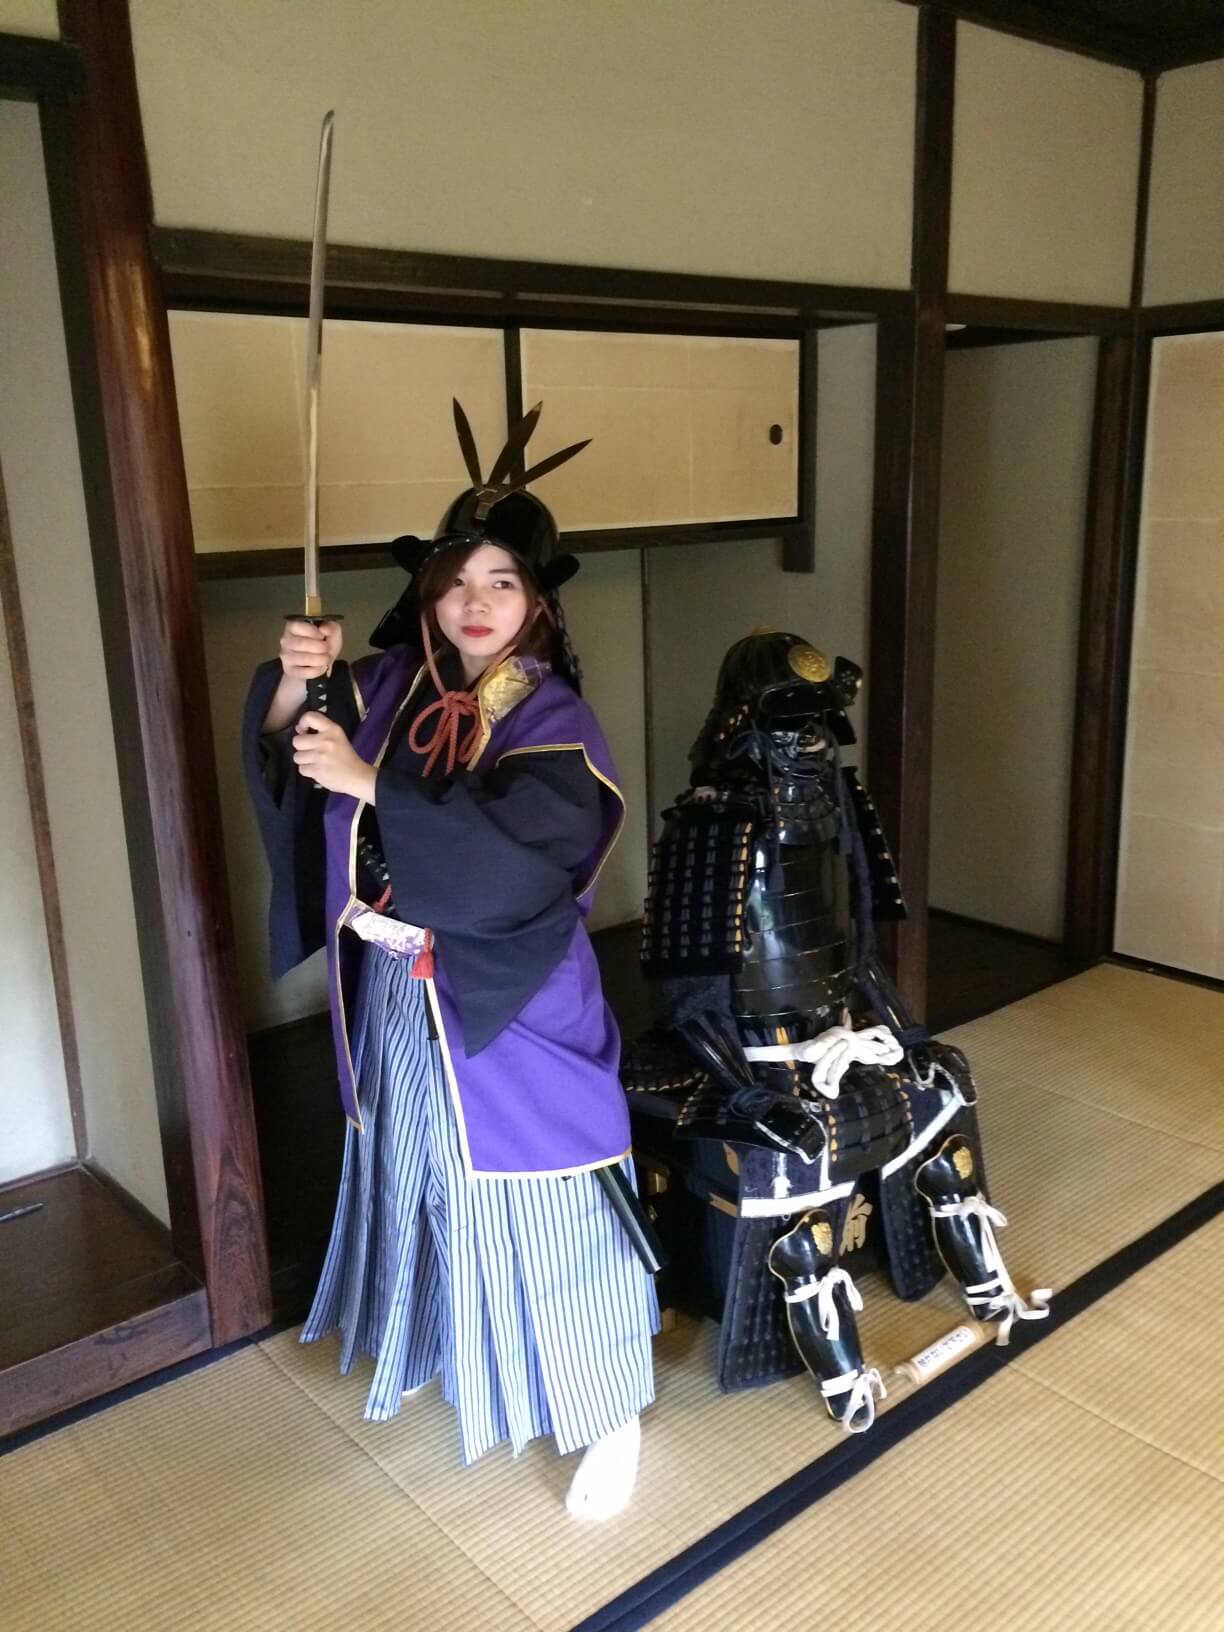 サムライ散歩 千葉県佐倉市 観光 Chiba Samurai experience sightseeing 2